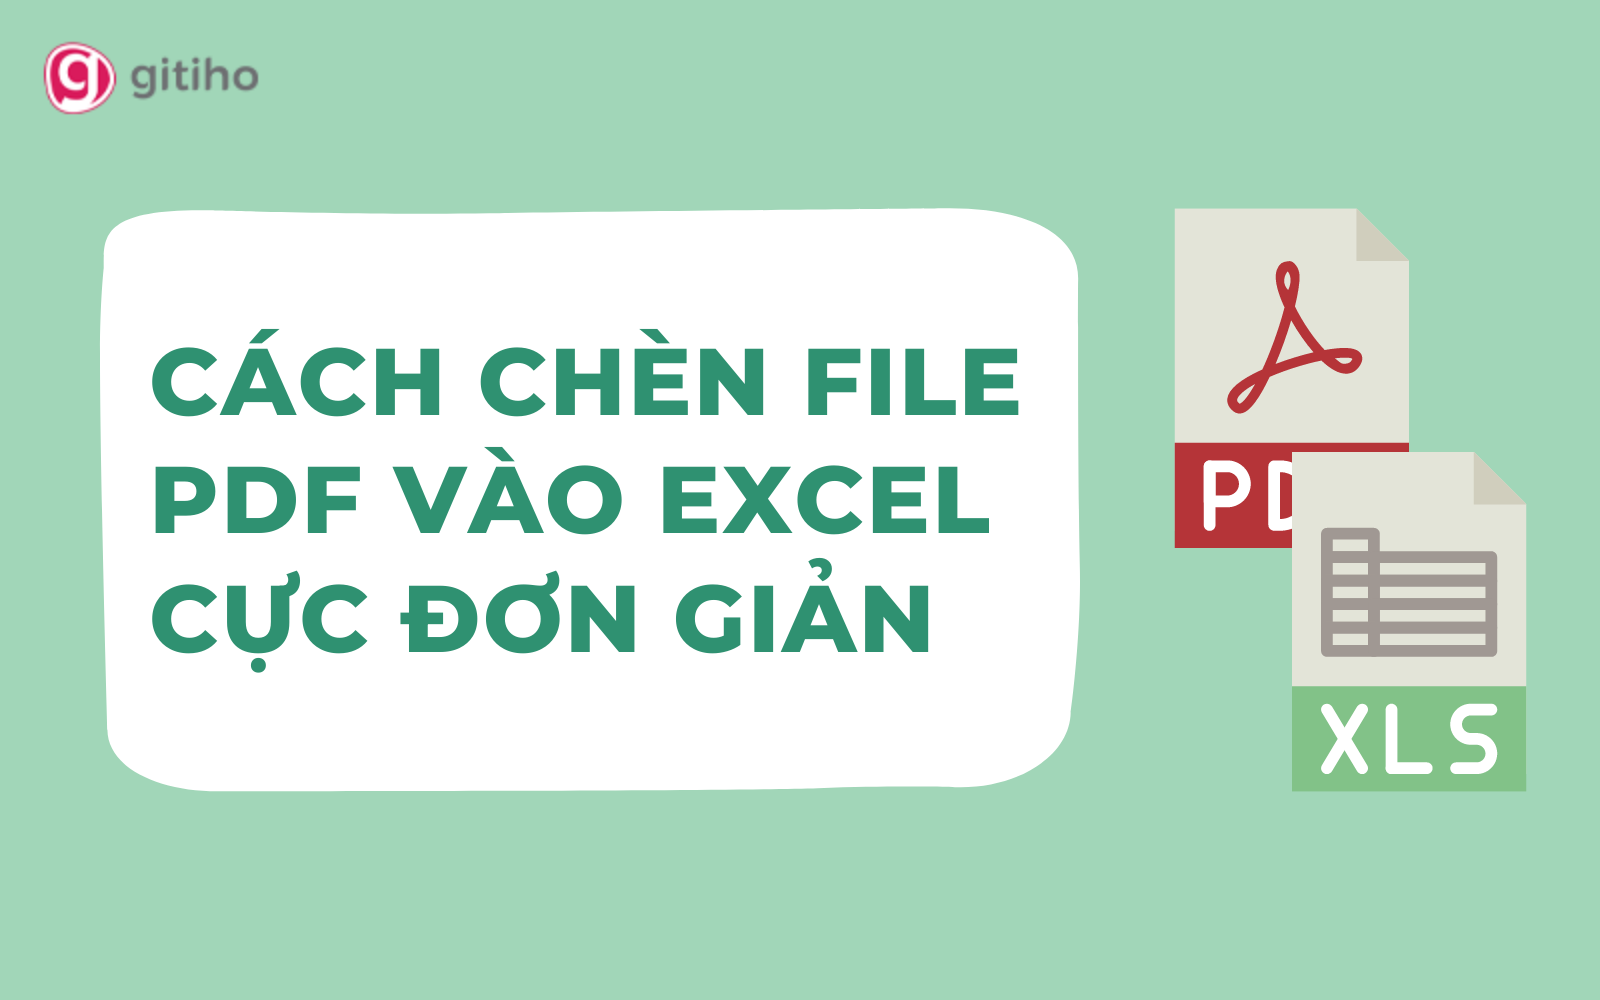 Có cách nào để thực hiện chèn nhiều file PDF vào Excel một lúc không?
